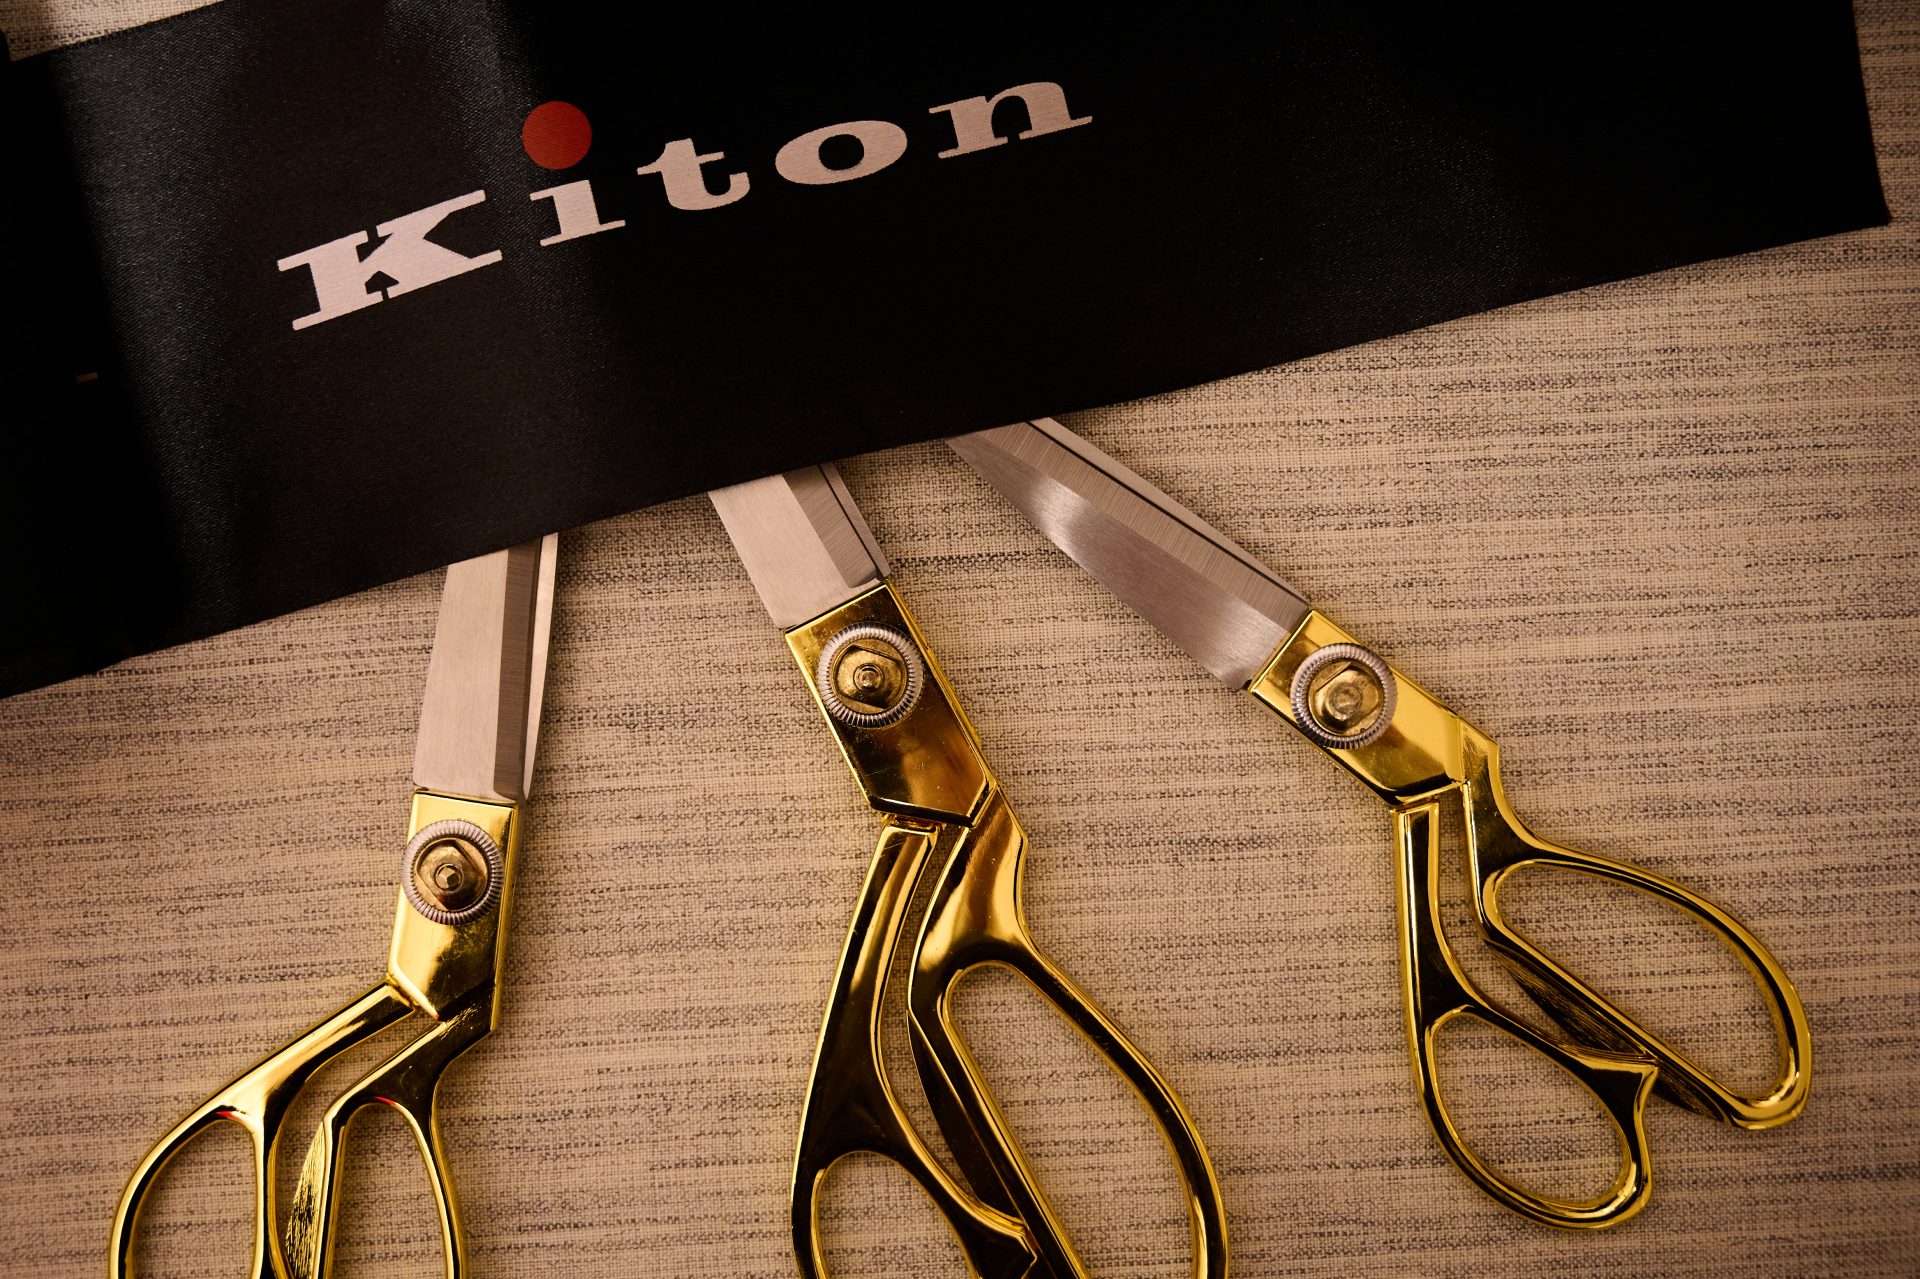 Генеральный директор Kiton Антонио де Маттеис на открытии обновленного бутика в Астане: «Kiton недостаточно дорогой по сравнению с его качеством»